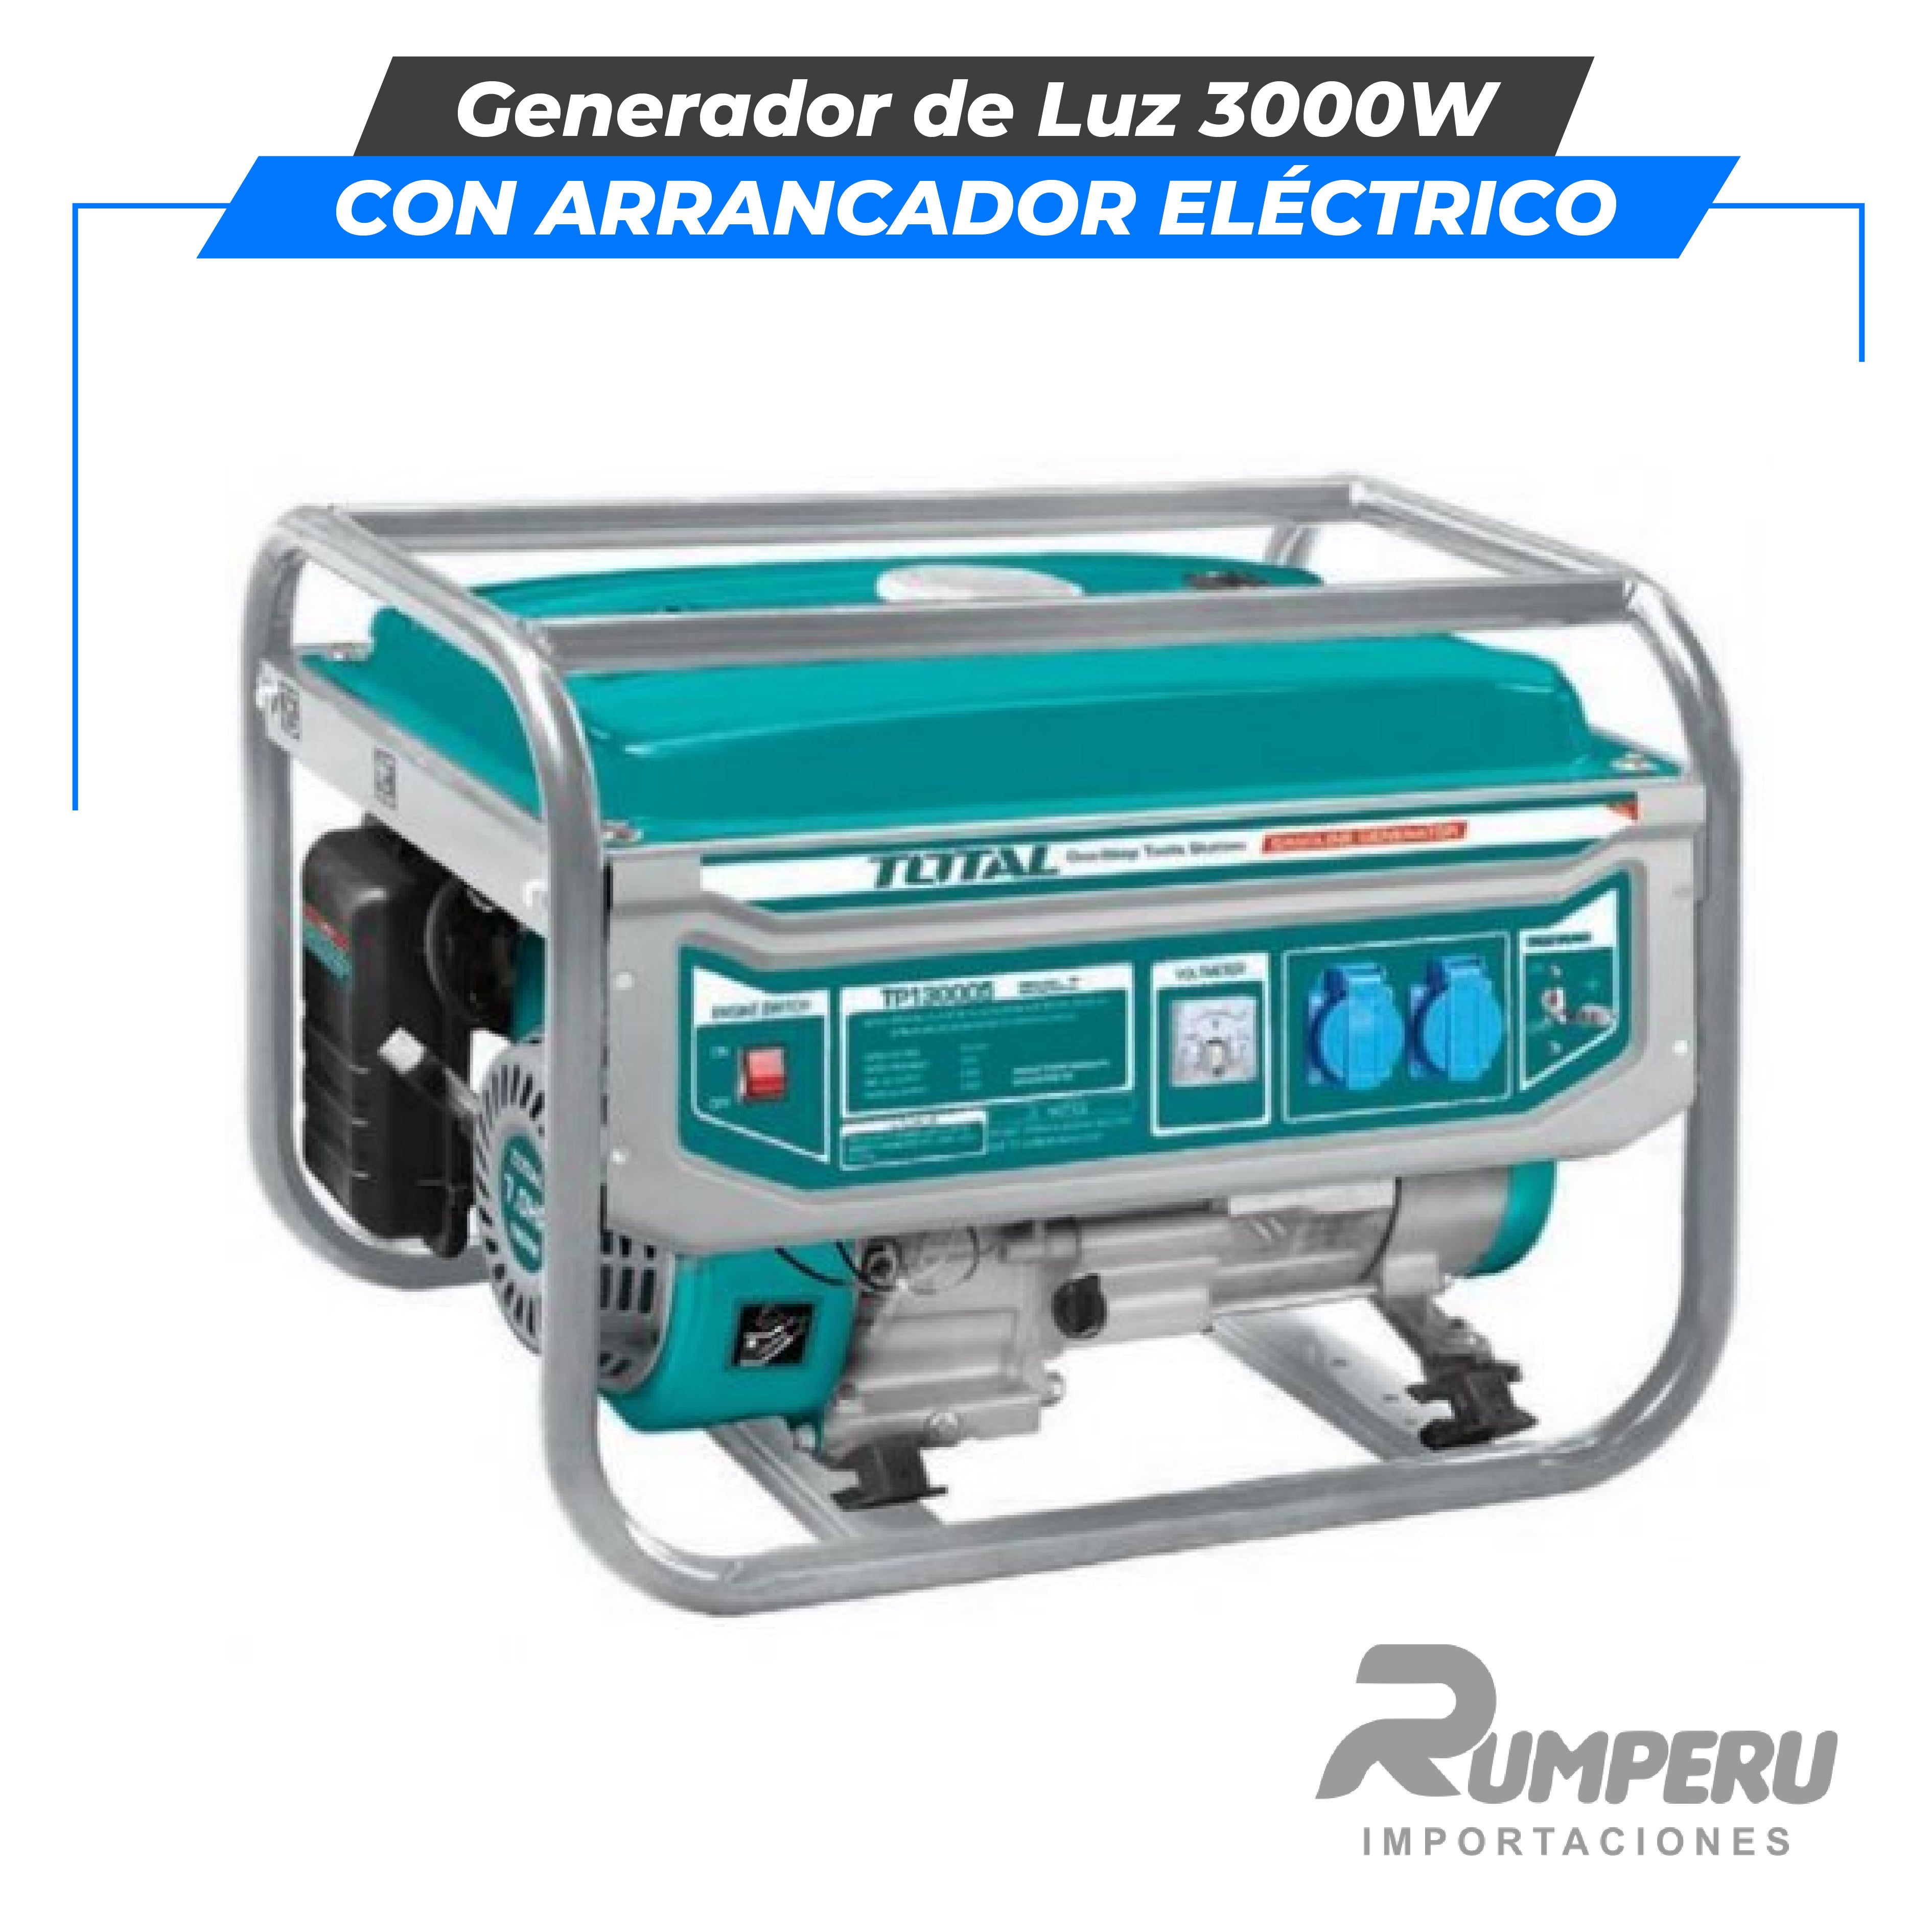 Generador de Luz 3000W (con arrancador eléctrico)